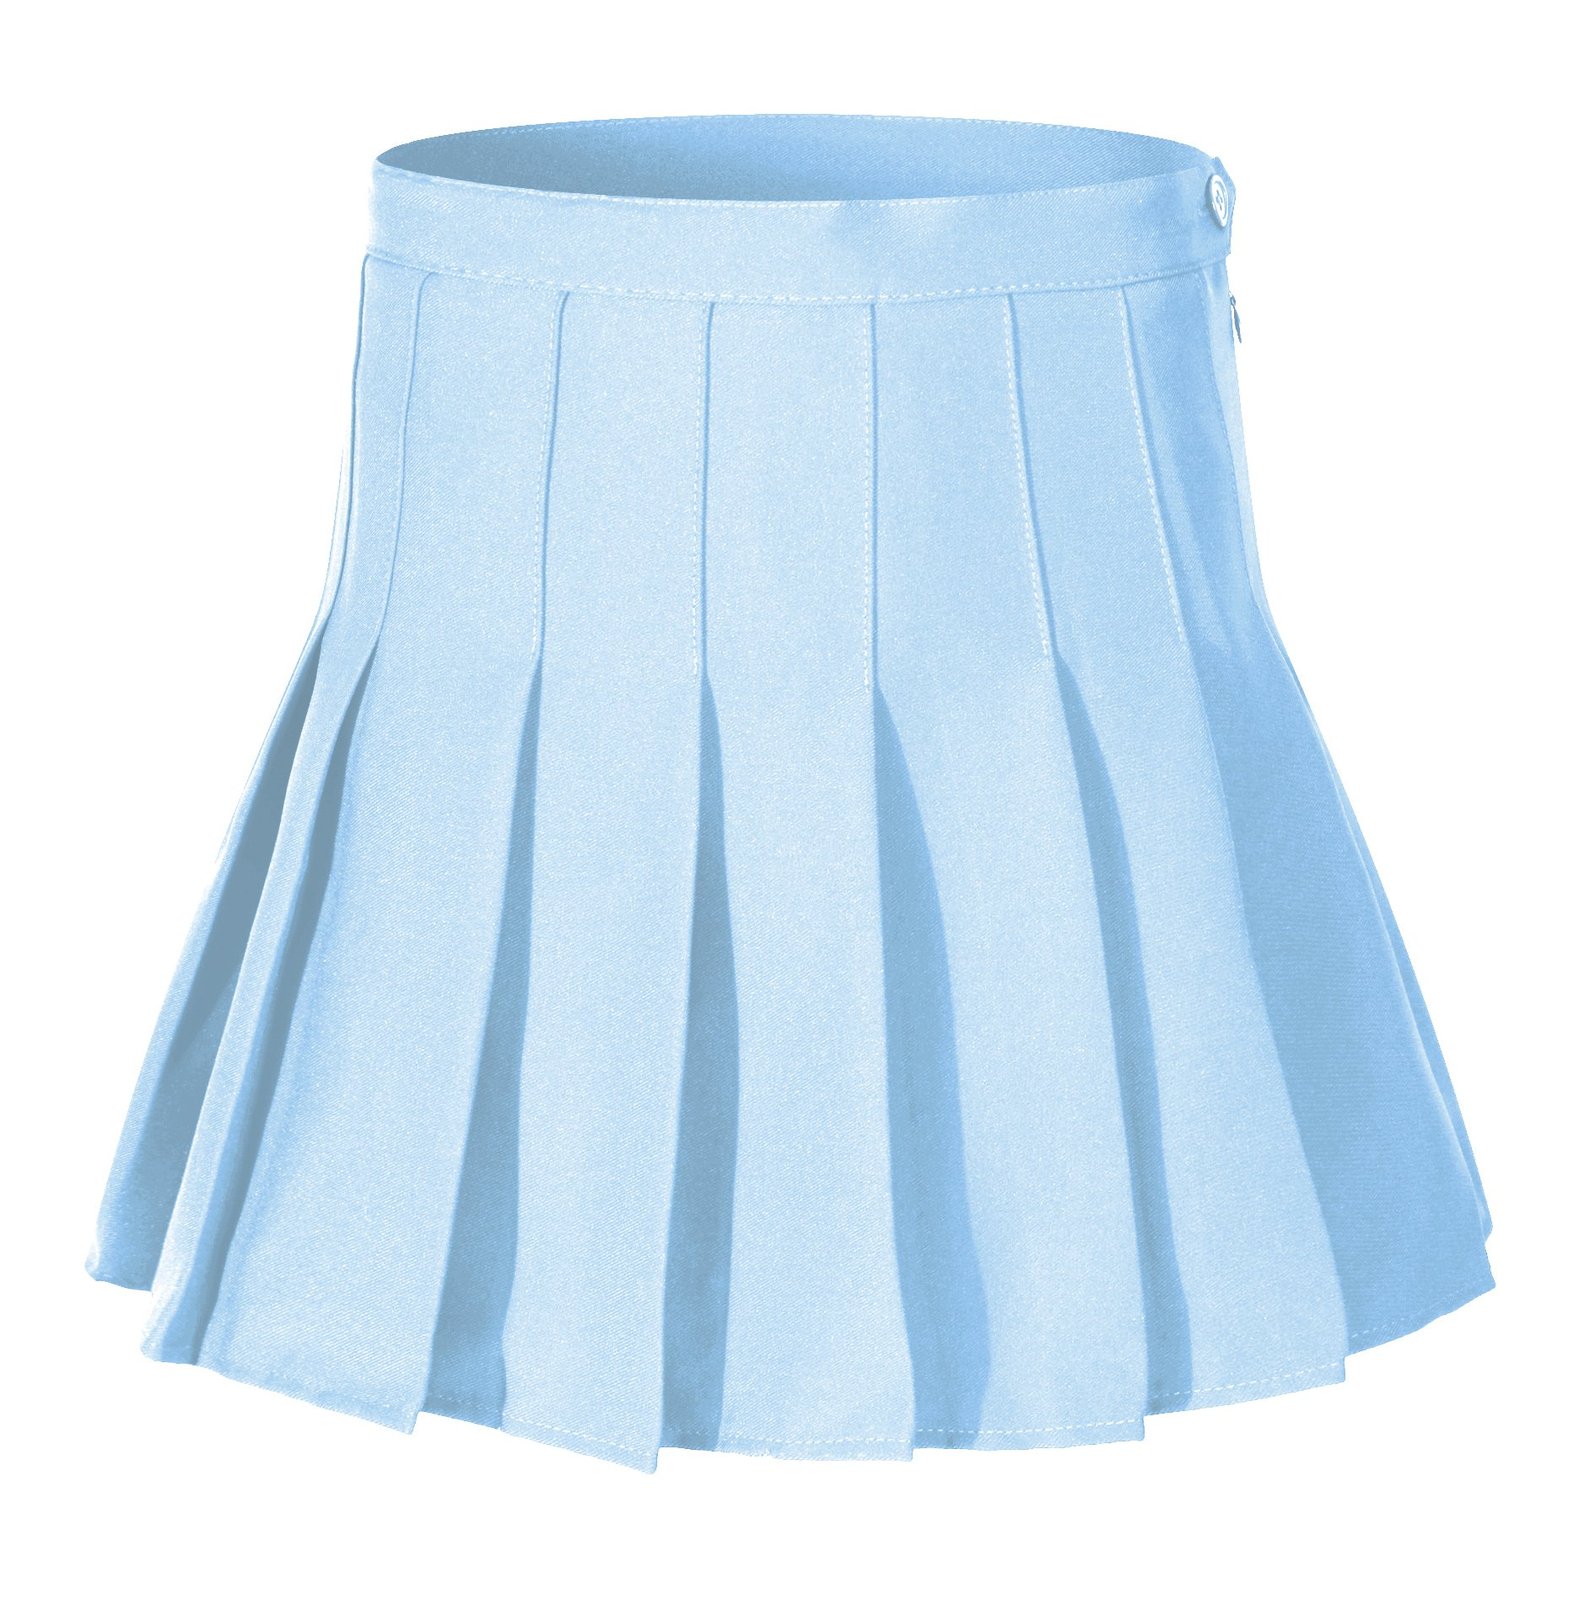 Women's High Waist Solid Pleated Mini Tennis Skirt (XL, Light blue)